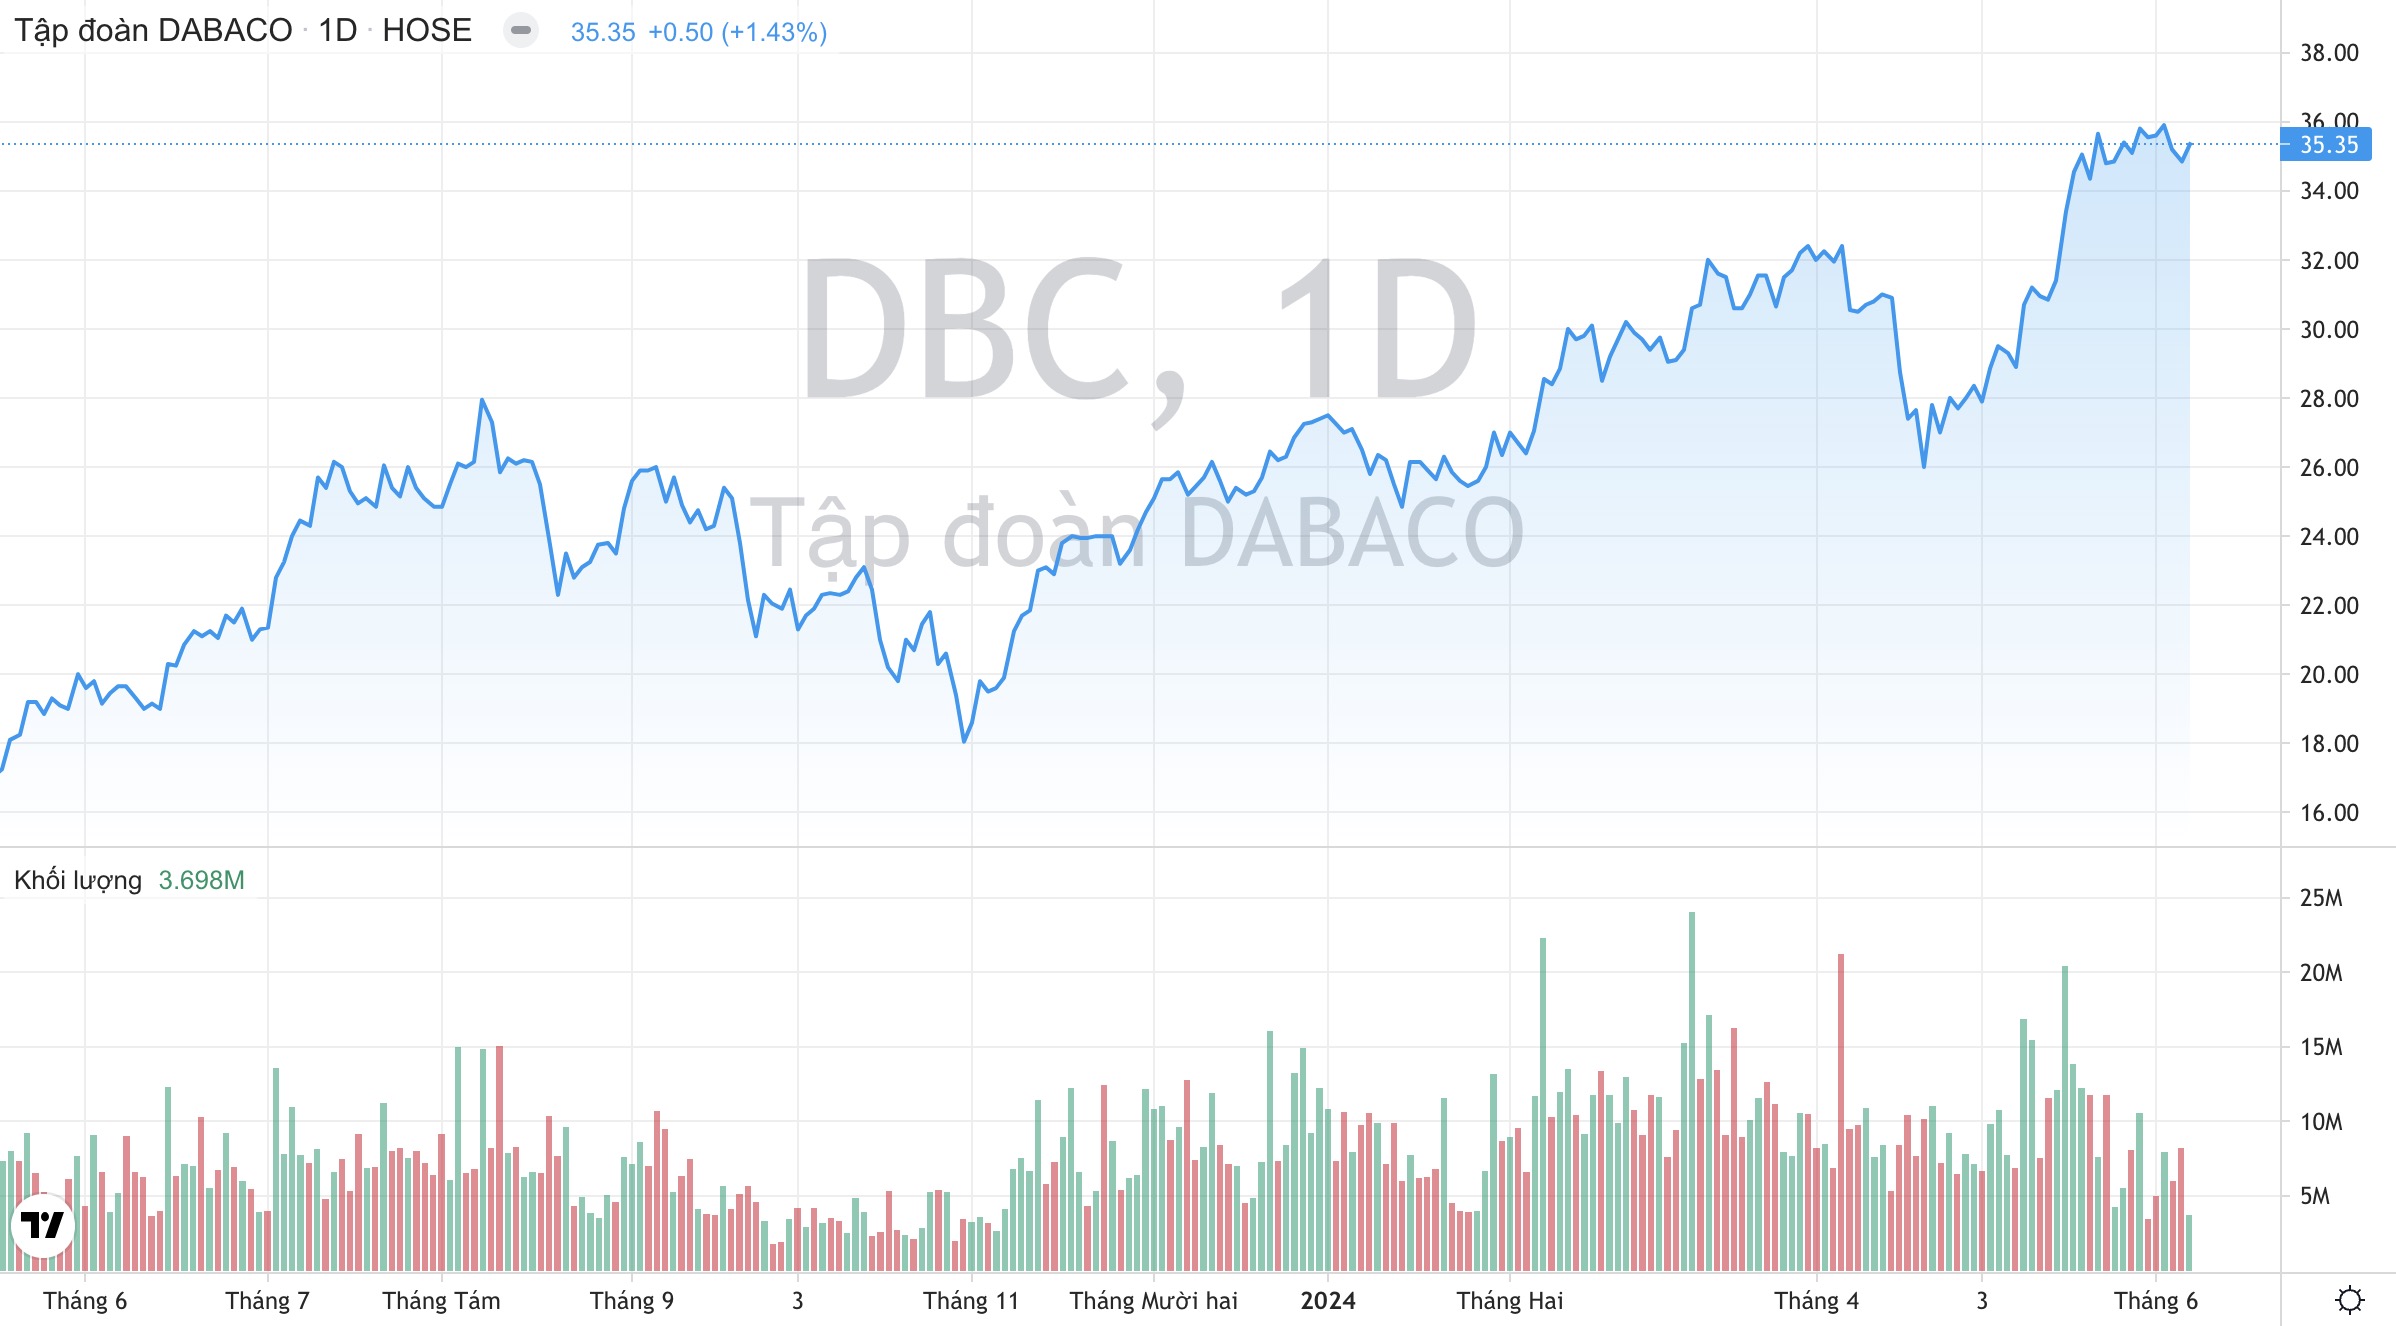 Giá cổ phiếu DBC Tập đoàn Dabaco